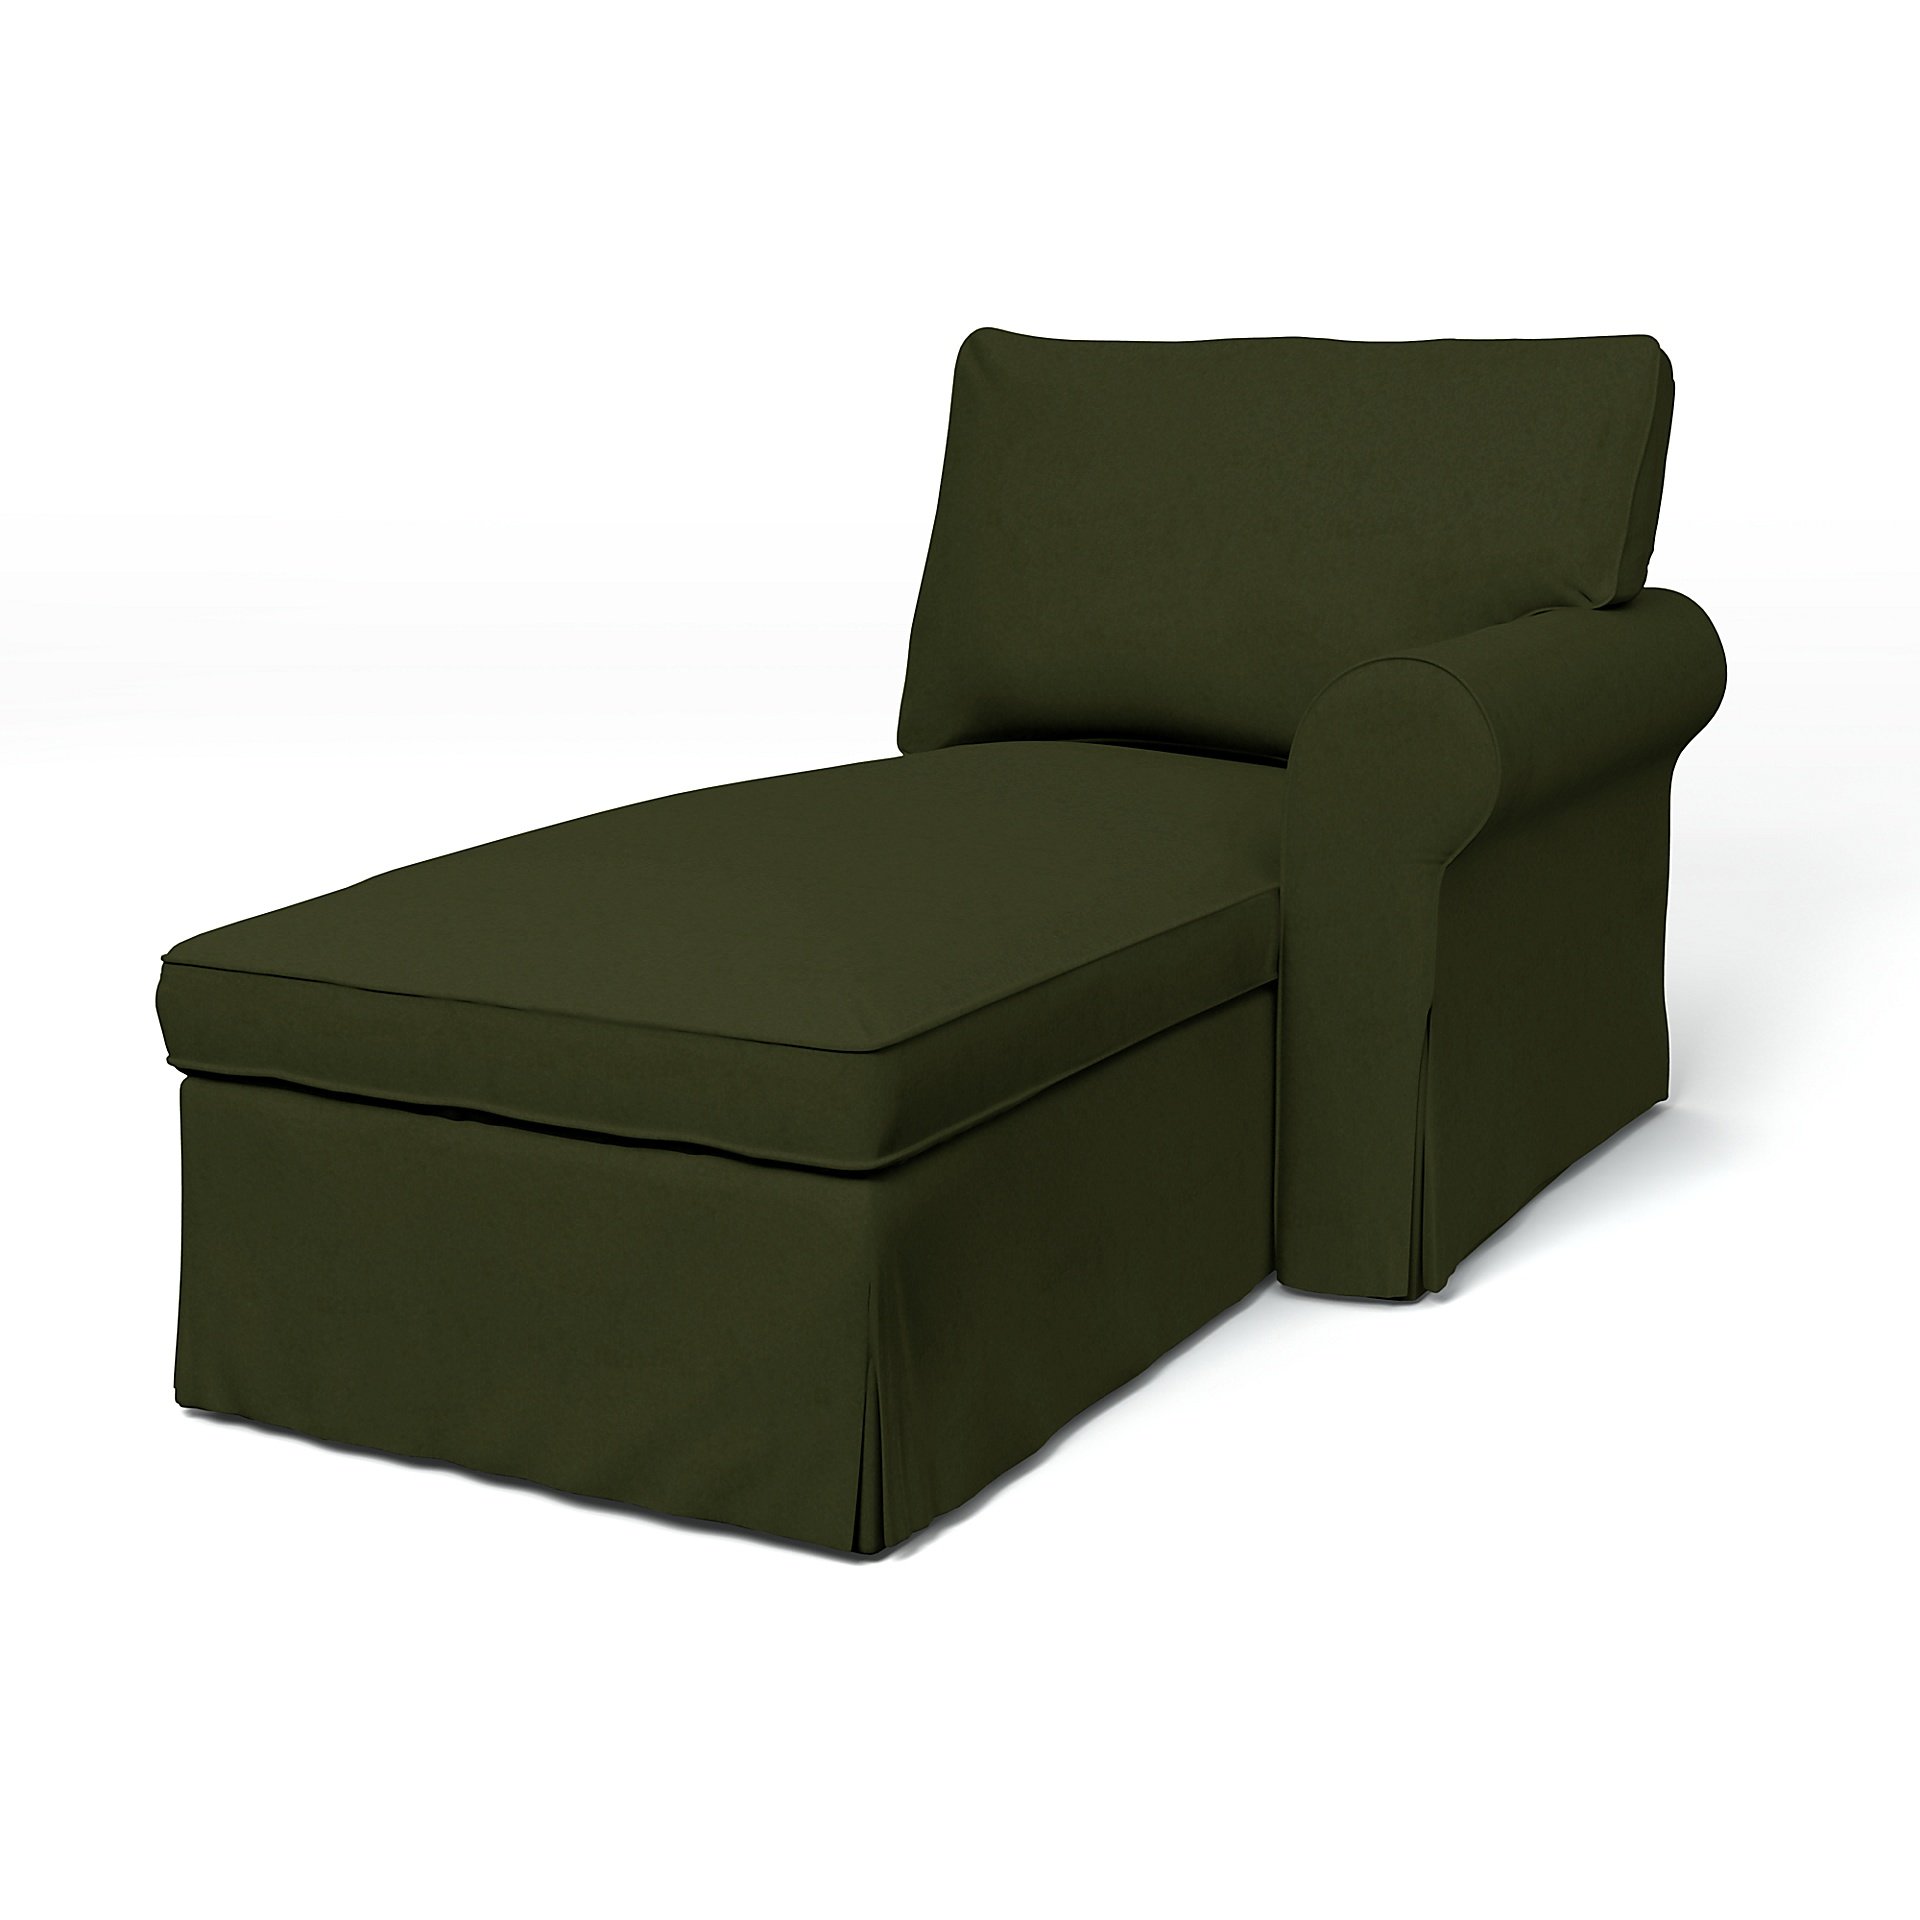 IKEA - Ektorp Chaise with Right Armrest Cover, Moss, Velvet - Bemz